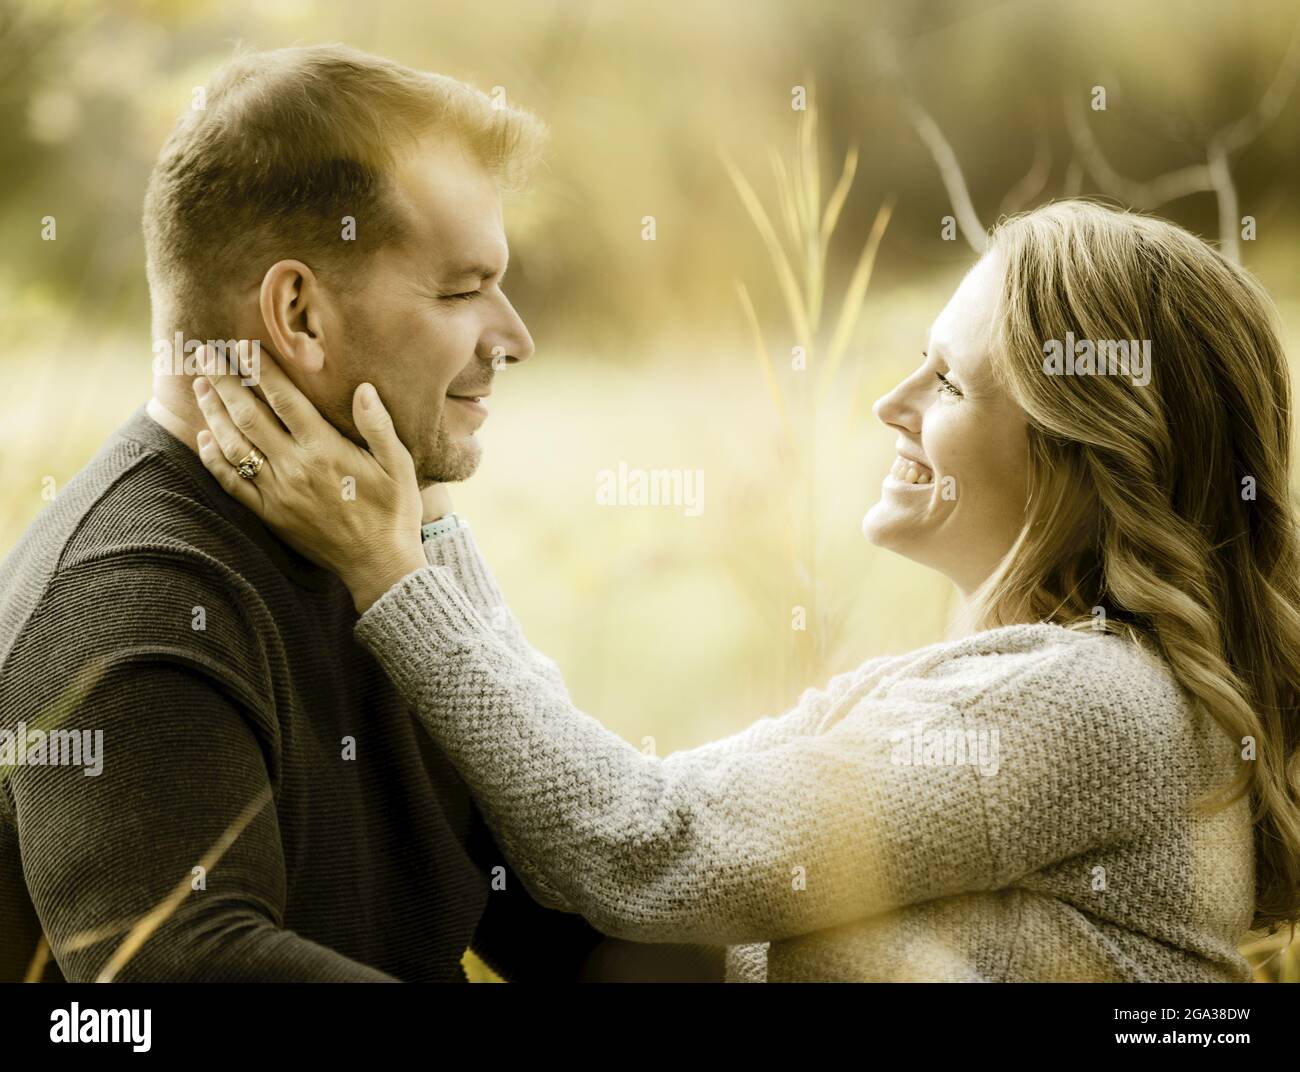 Un couple marié qui passe du temps ensemble de qualité à l'extérieur dans un parc municipal pendant la saison d'automne; St. Albert, Alberta, Canada Banque D'Images